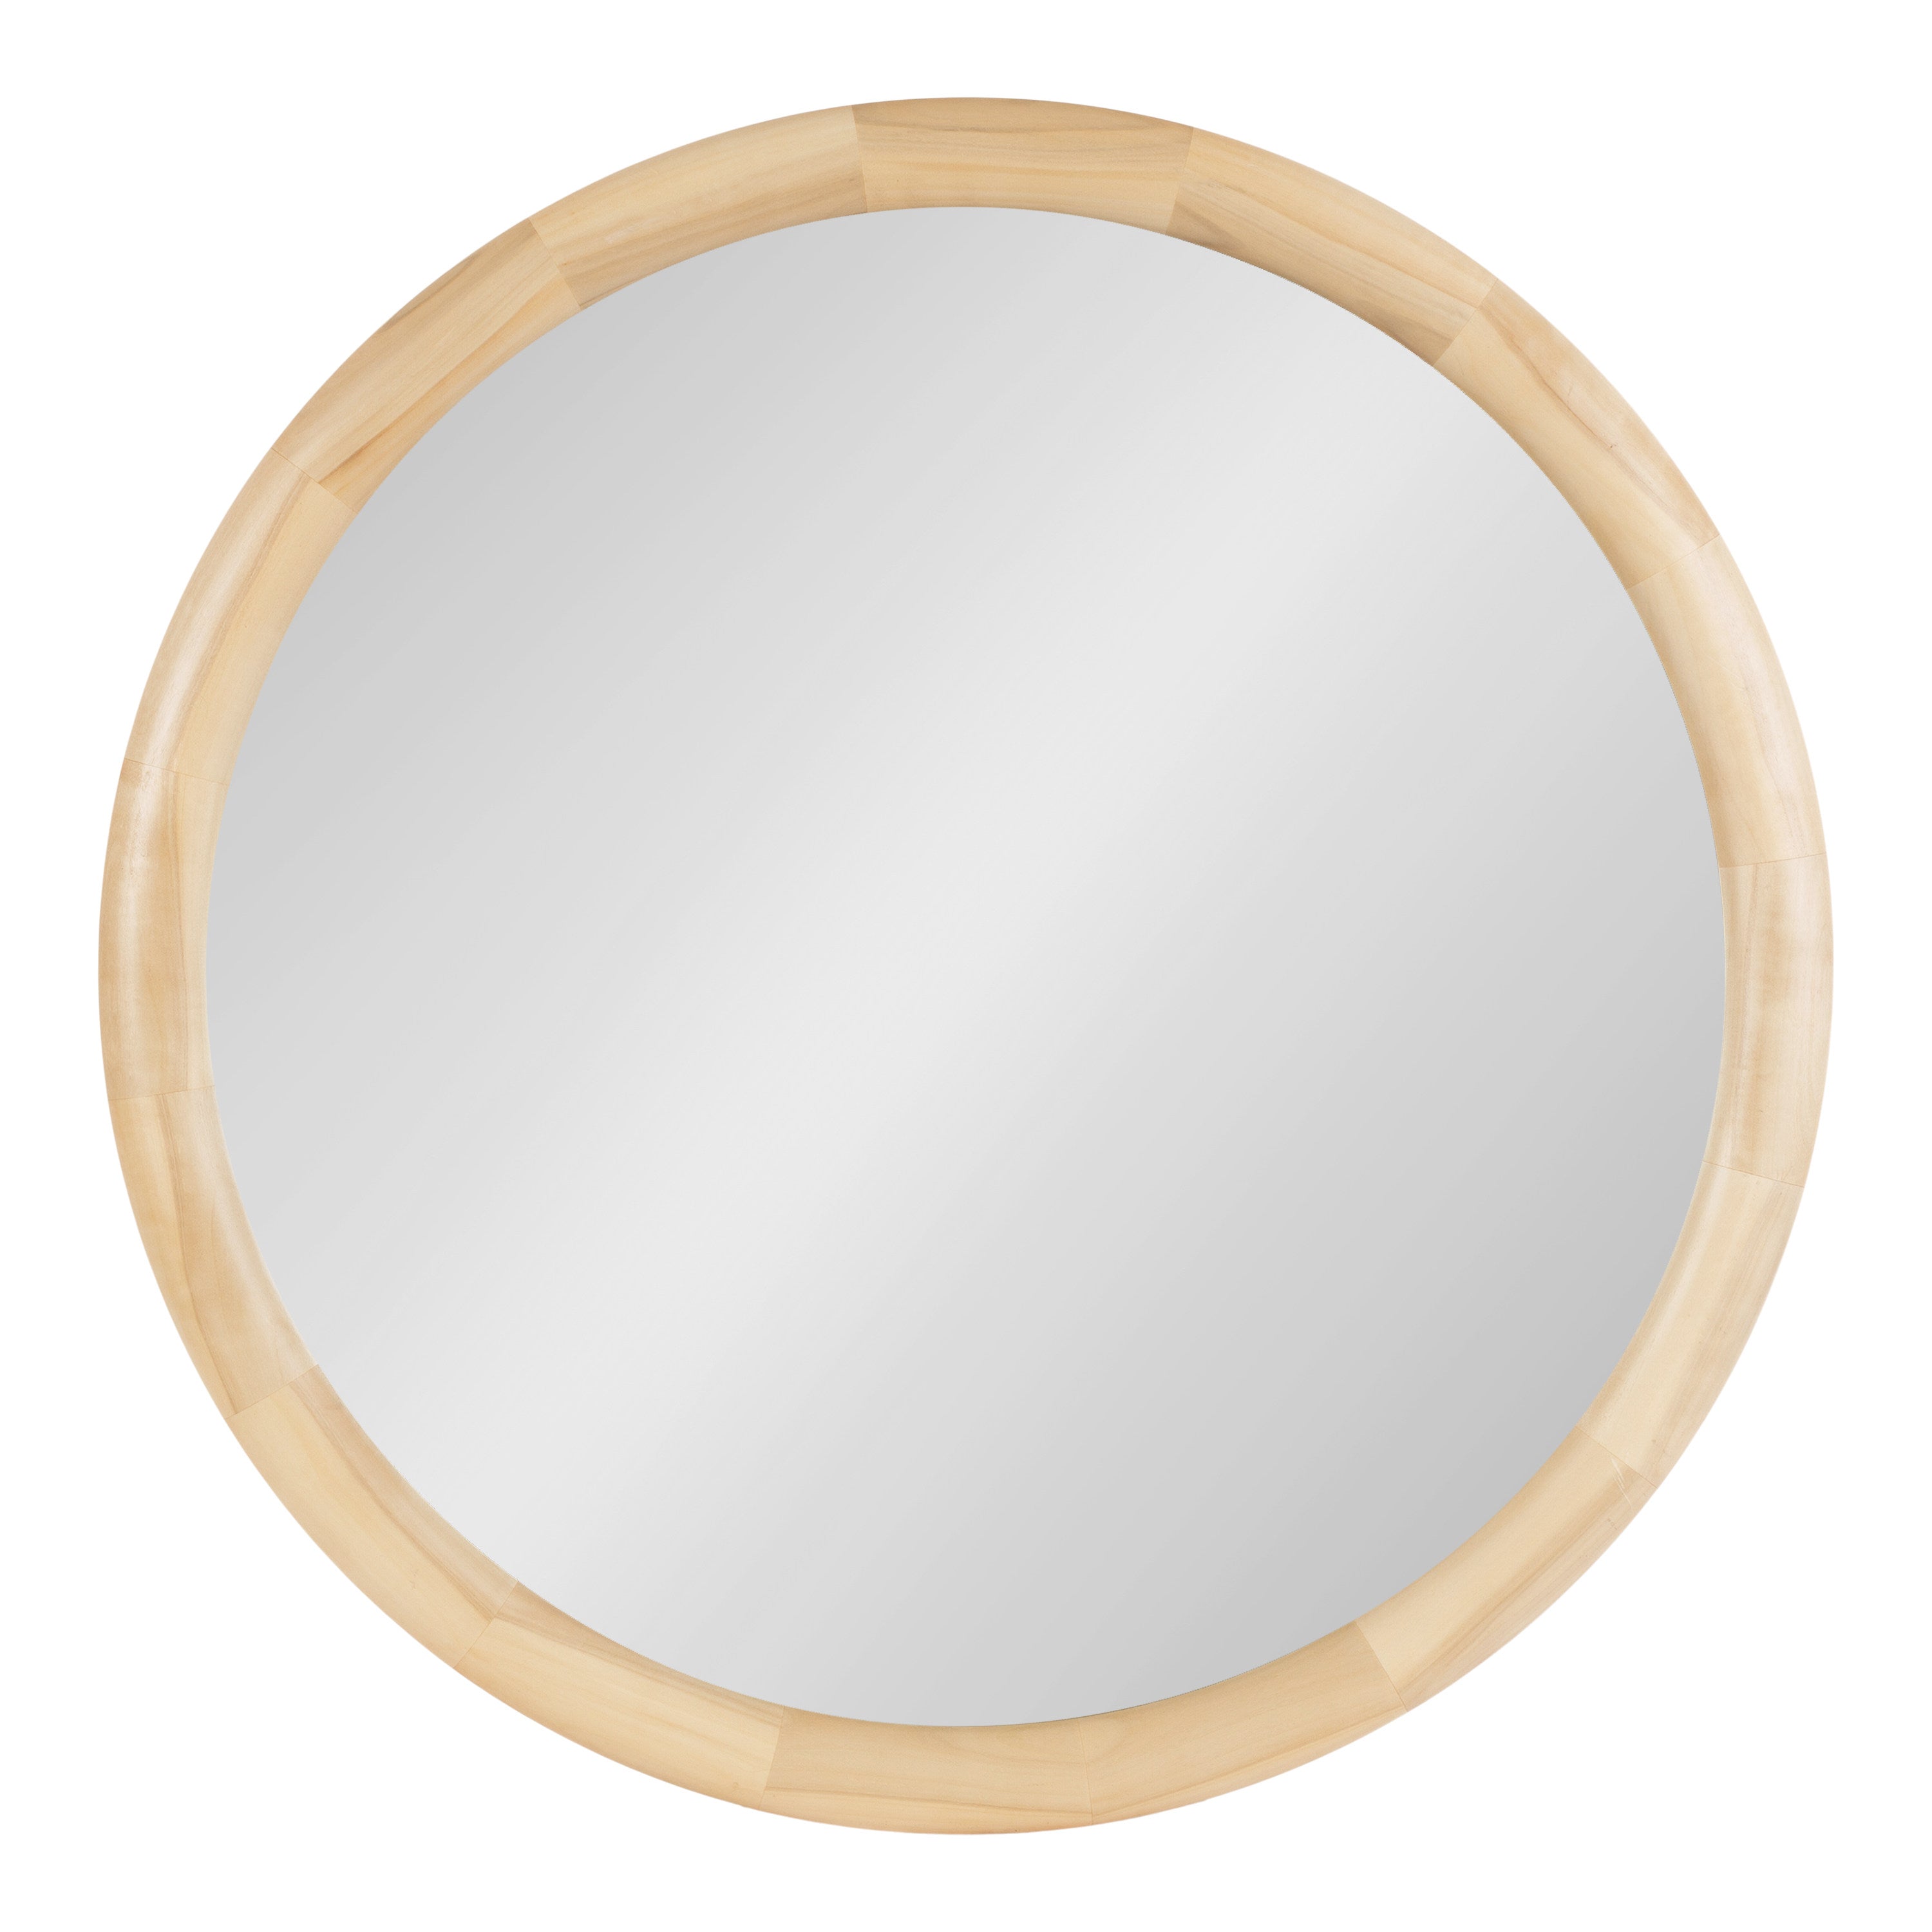 Dessa Round Wall Mirror